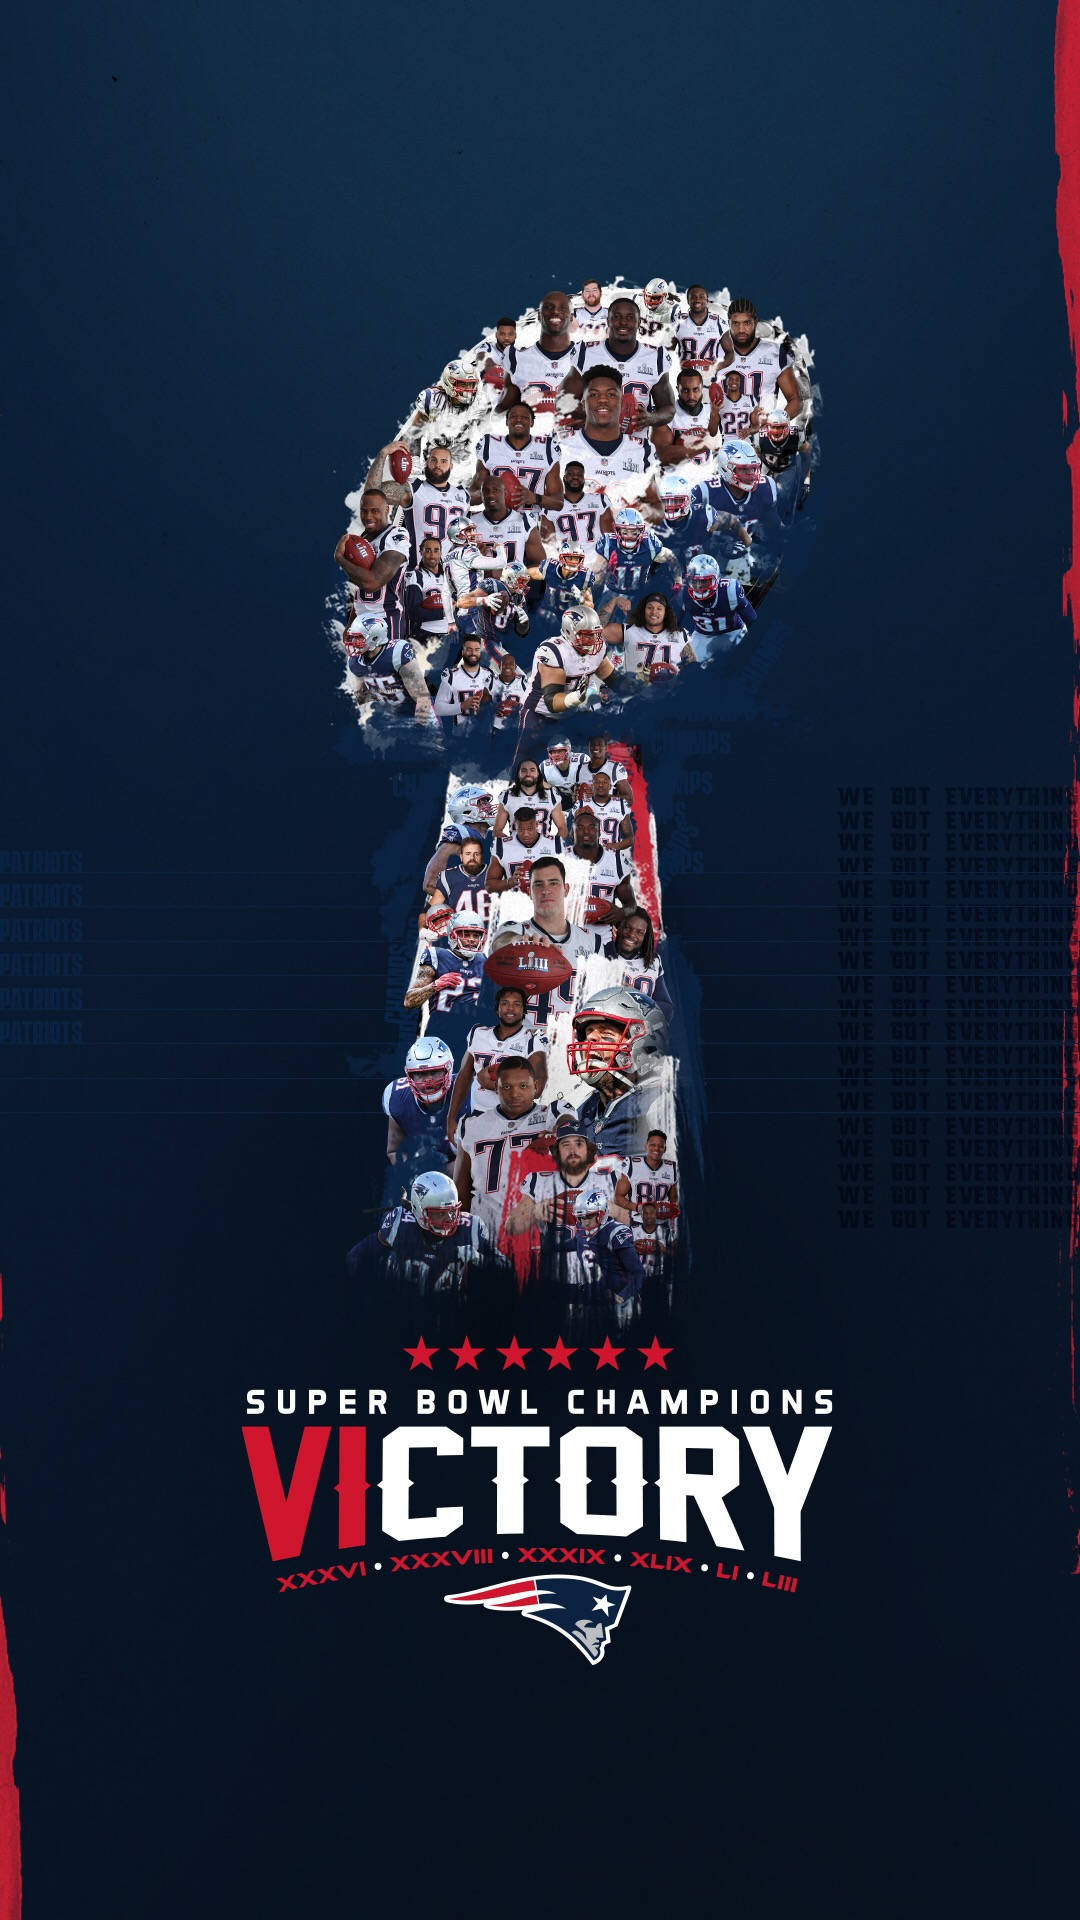 Dersiegesposter Der Super Bowl Champions Wallpaper